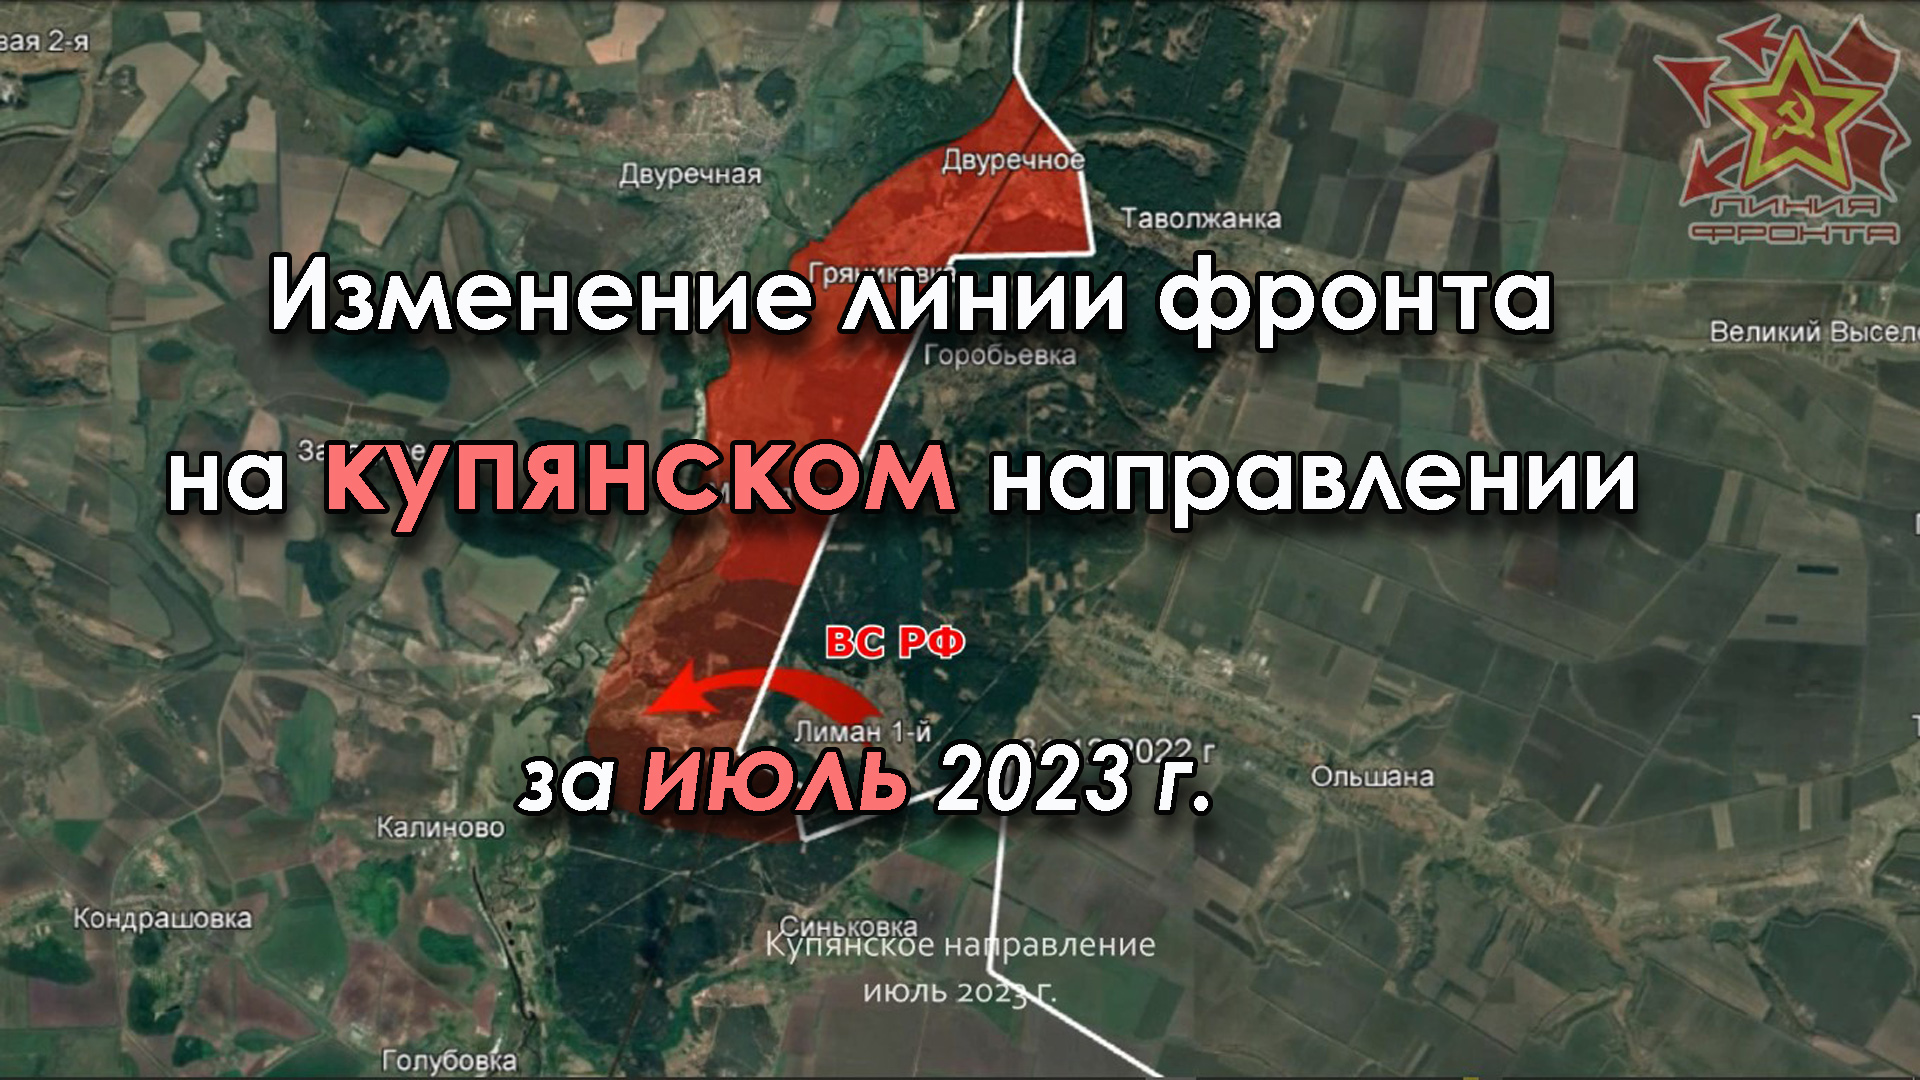 Изменение линии фронта на КУПЯНСКОМ направлении за ИЮЛЬ 2023 г.